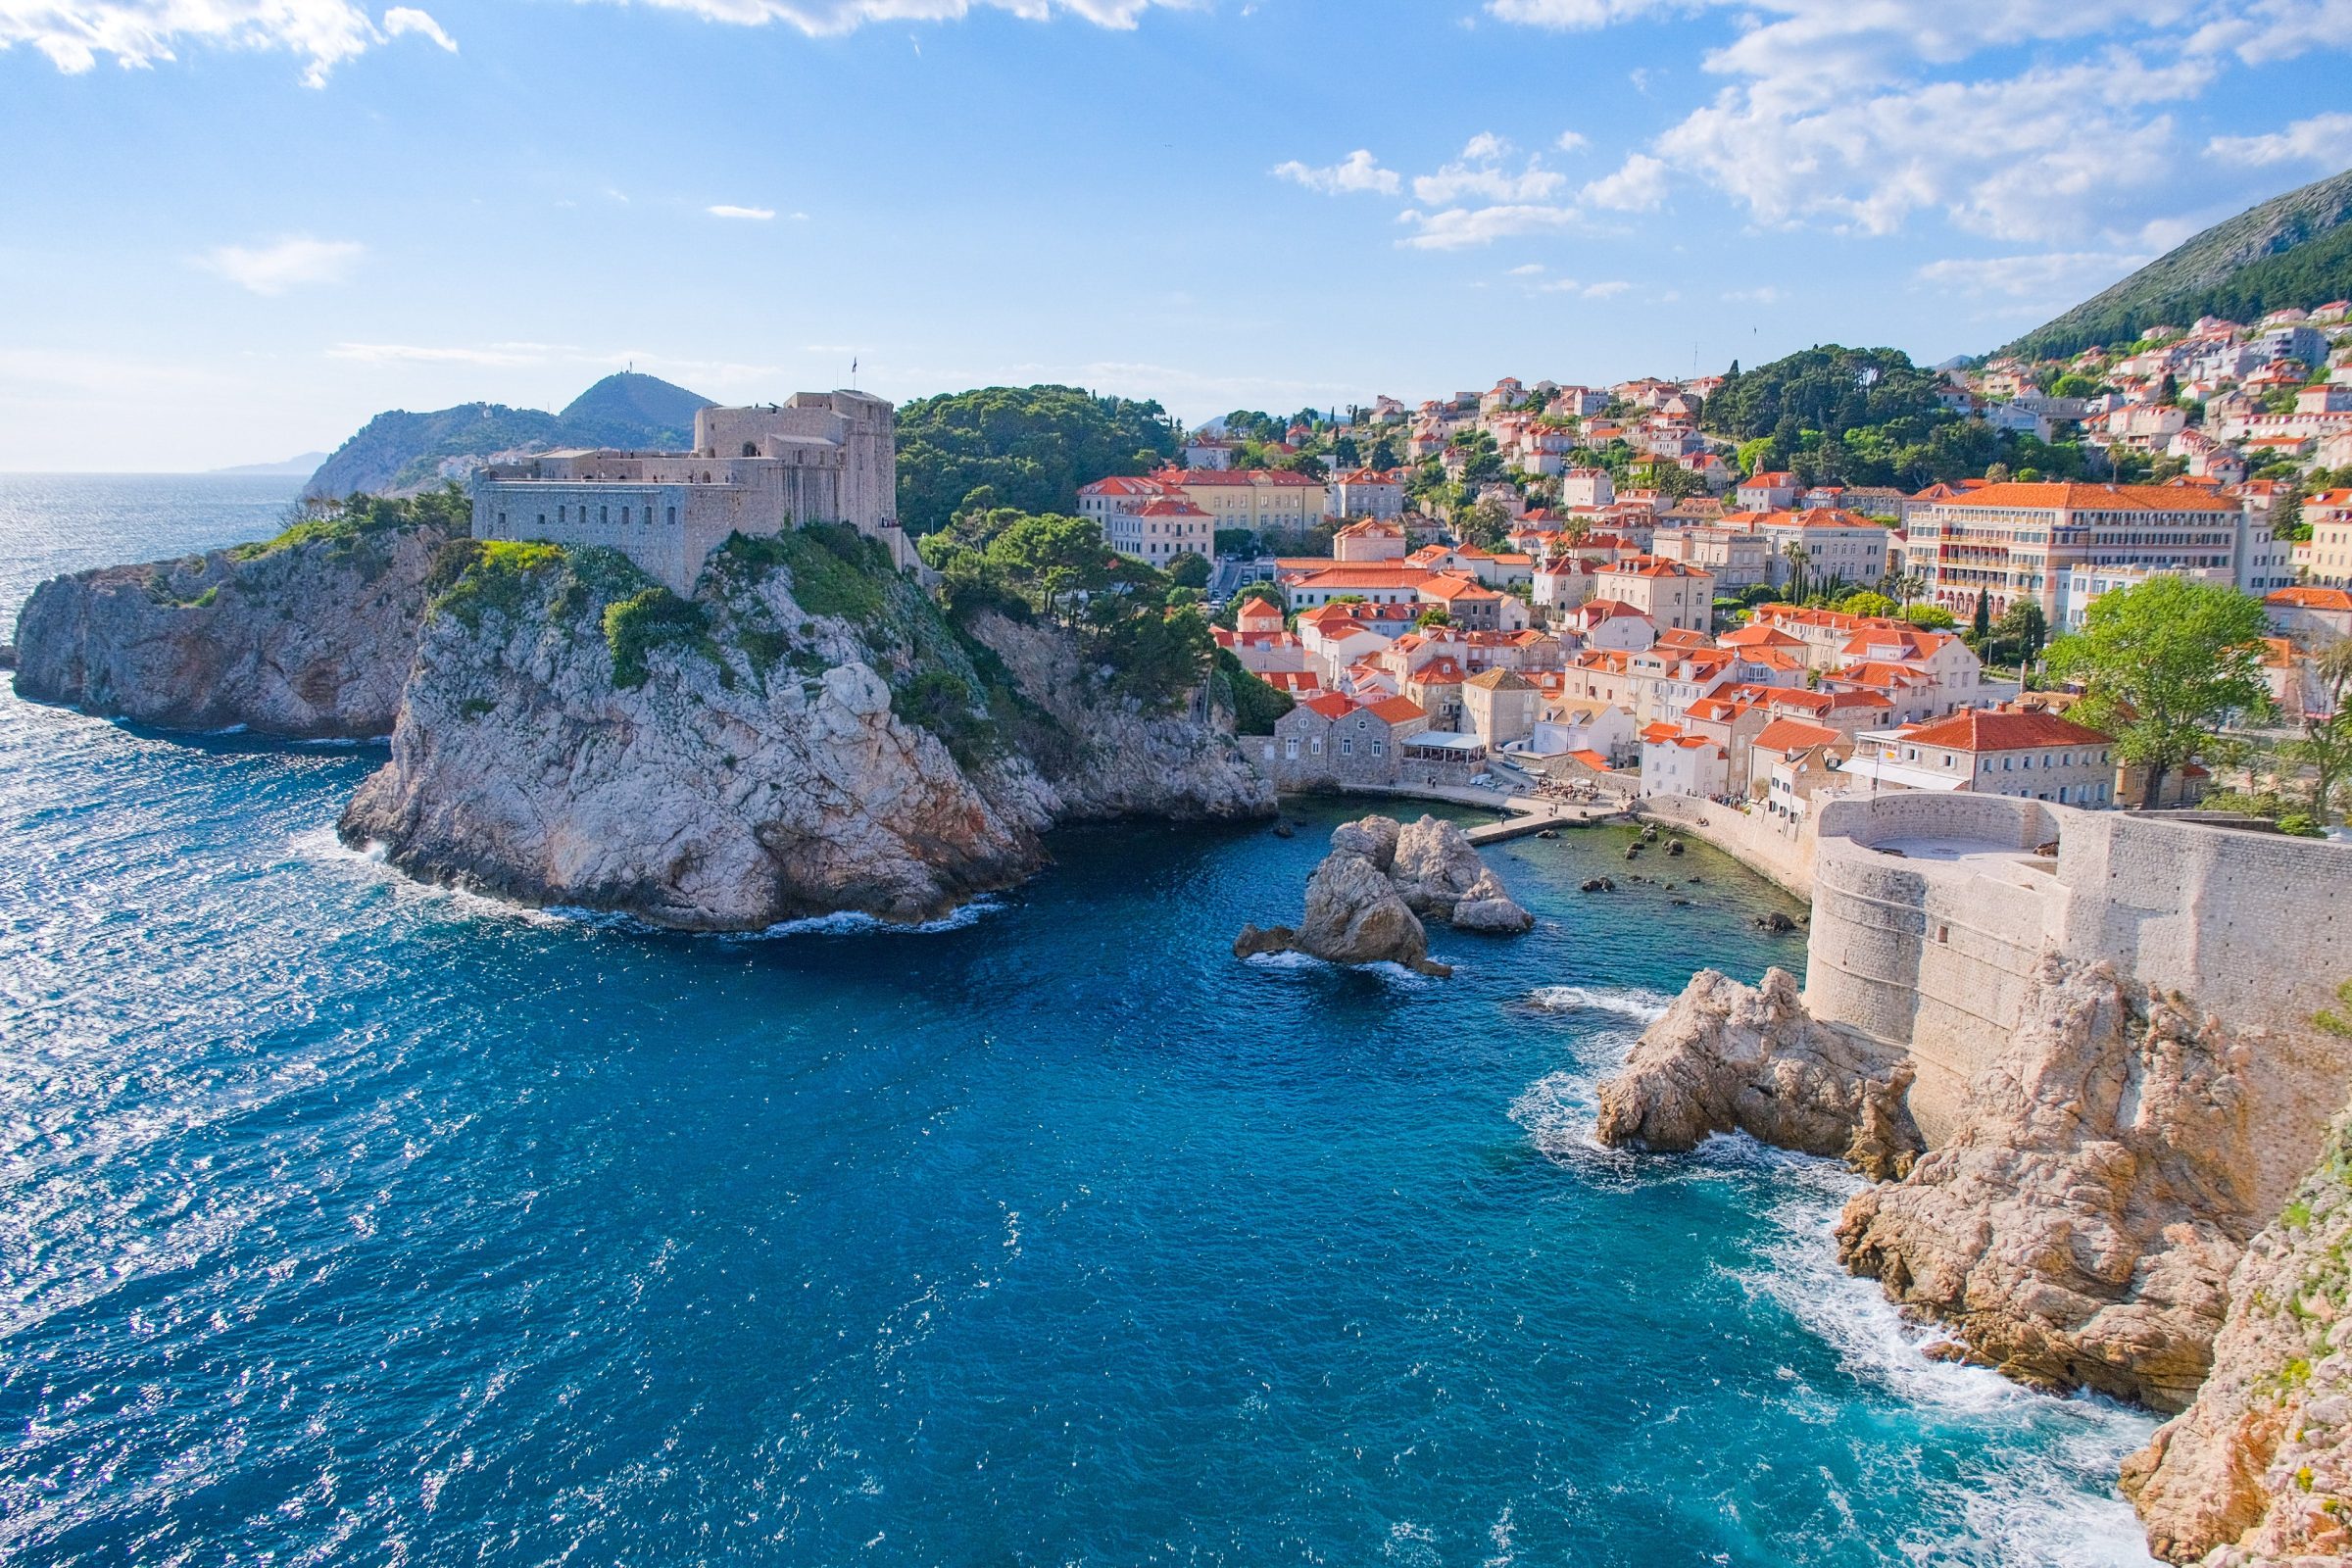 Stedentrip Dubrovnik in de lente | Mei en juni zijn doorgaans de groenste maanden